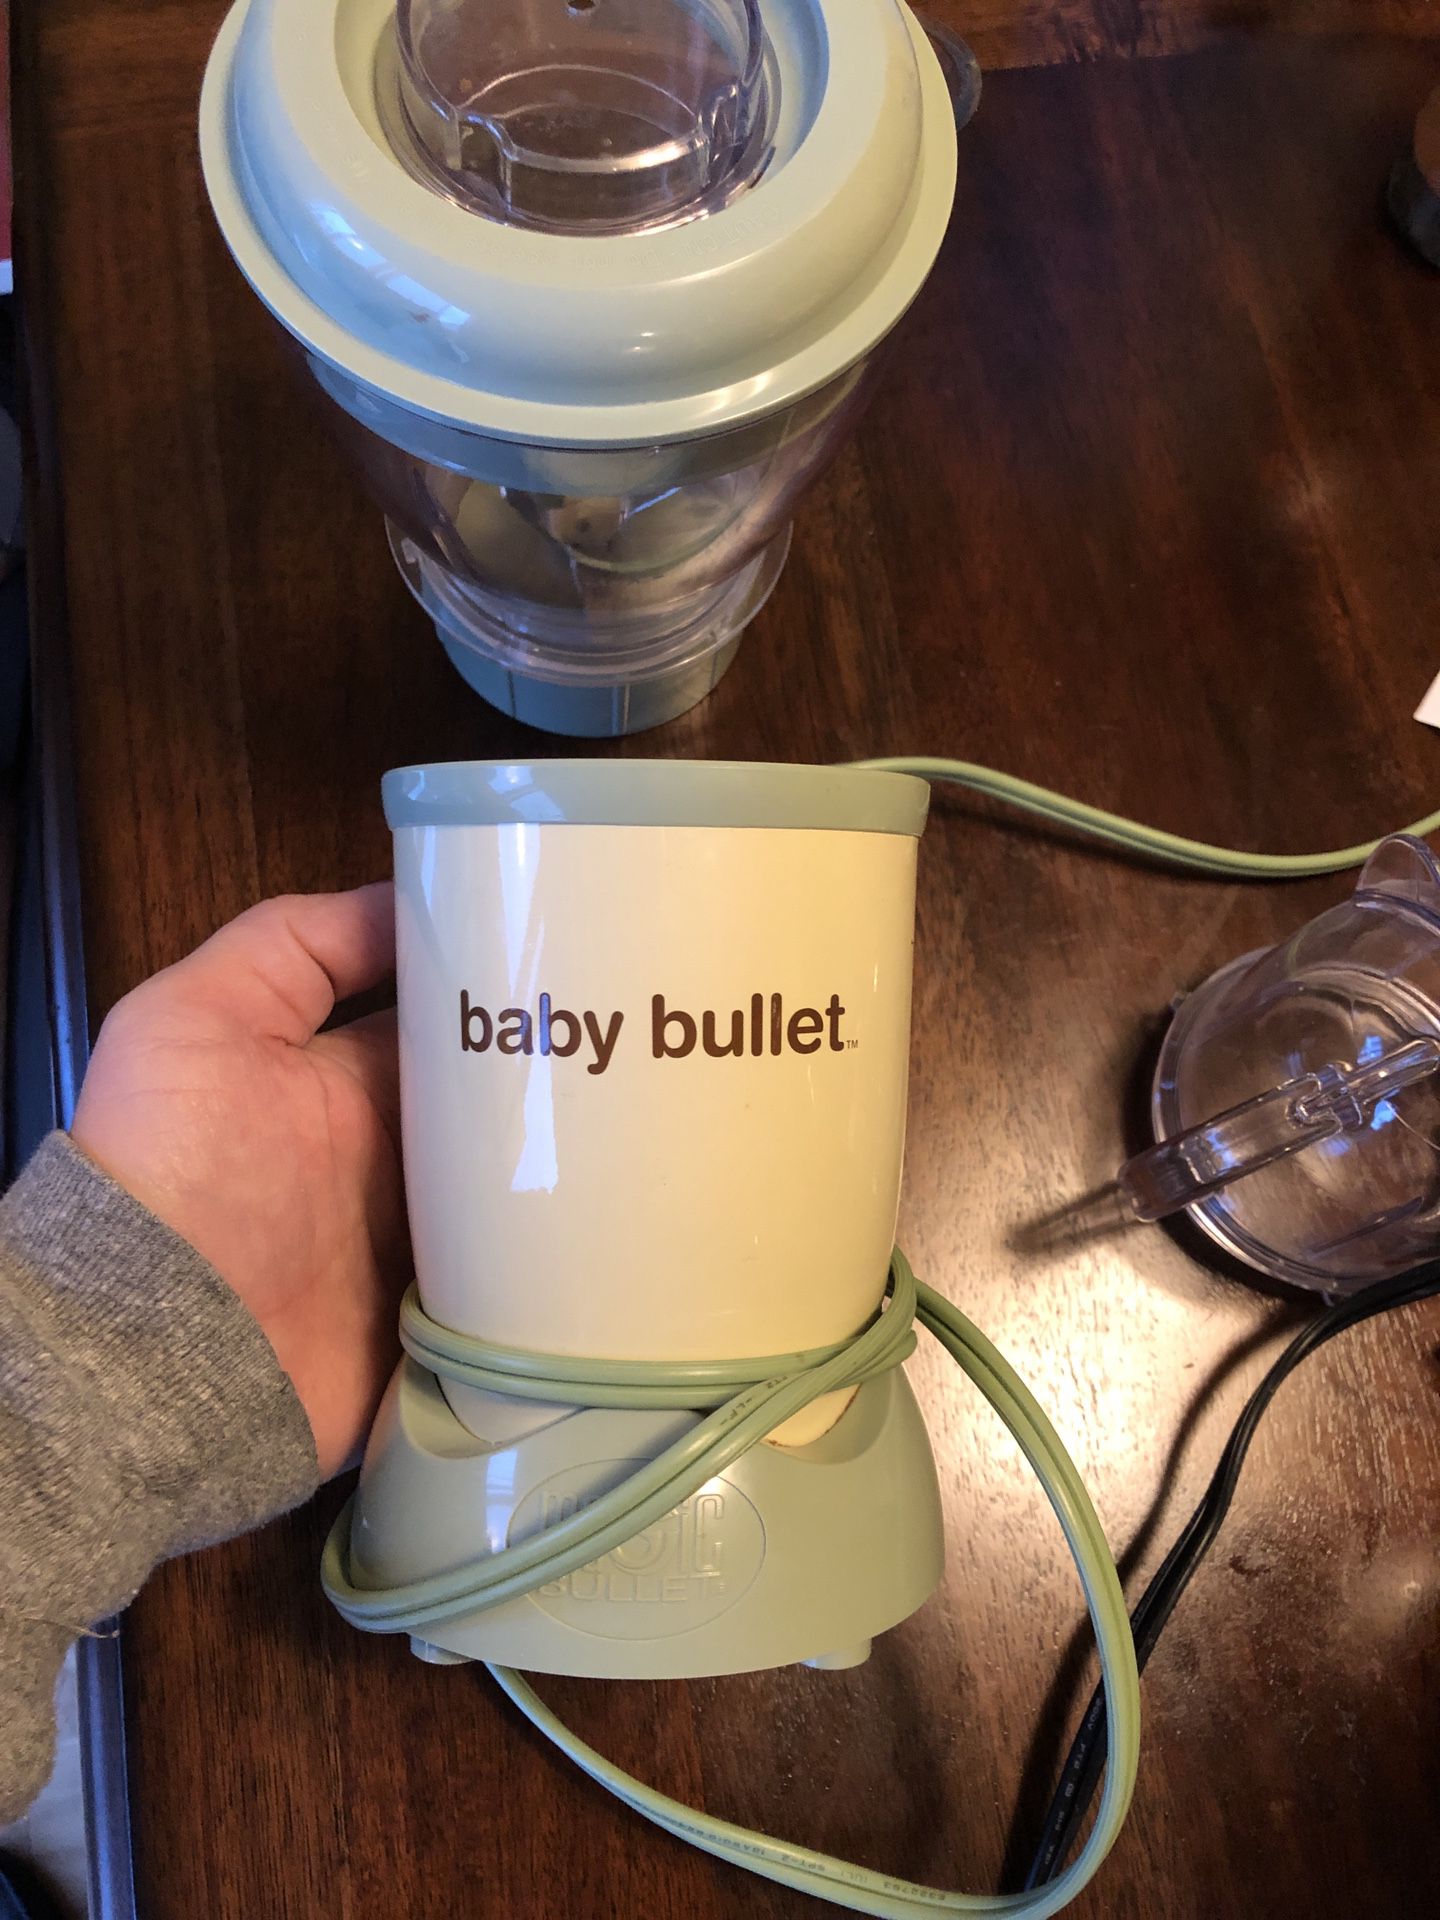 Baby bullet blender